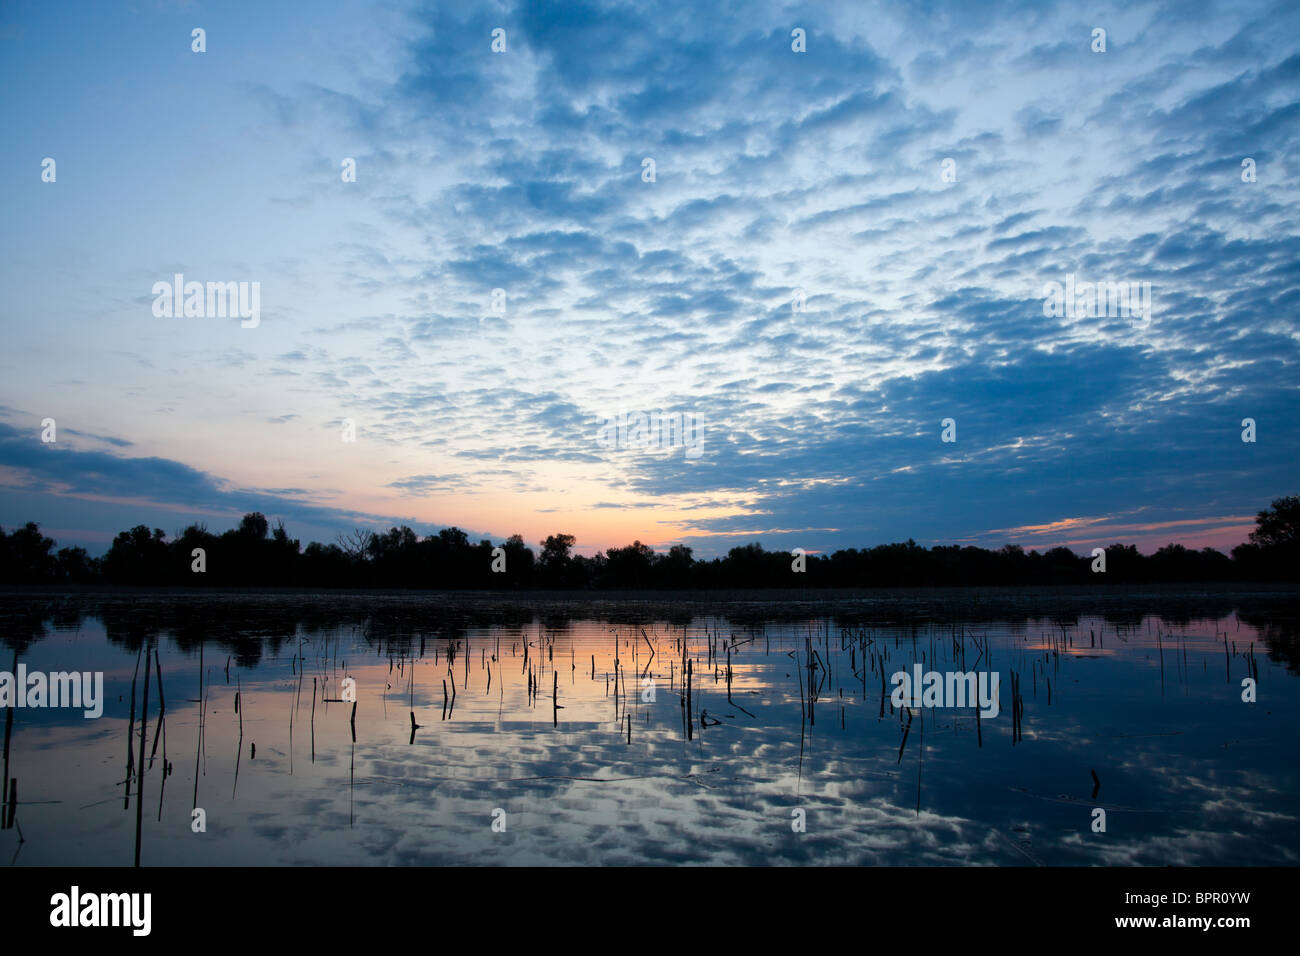 Sunrise landscape over a lake in the Danube Delta, Romania. Stock Photo